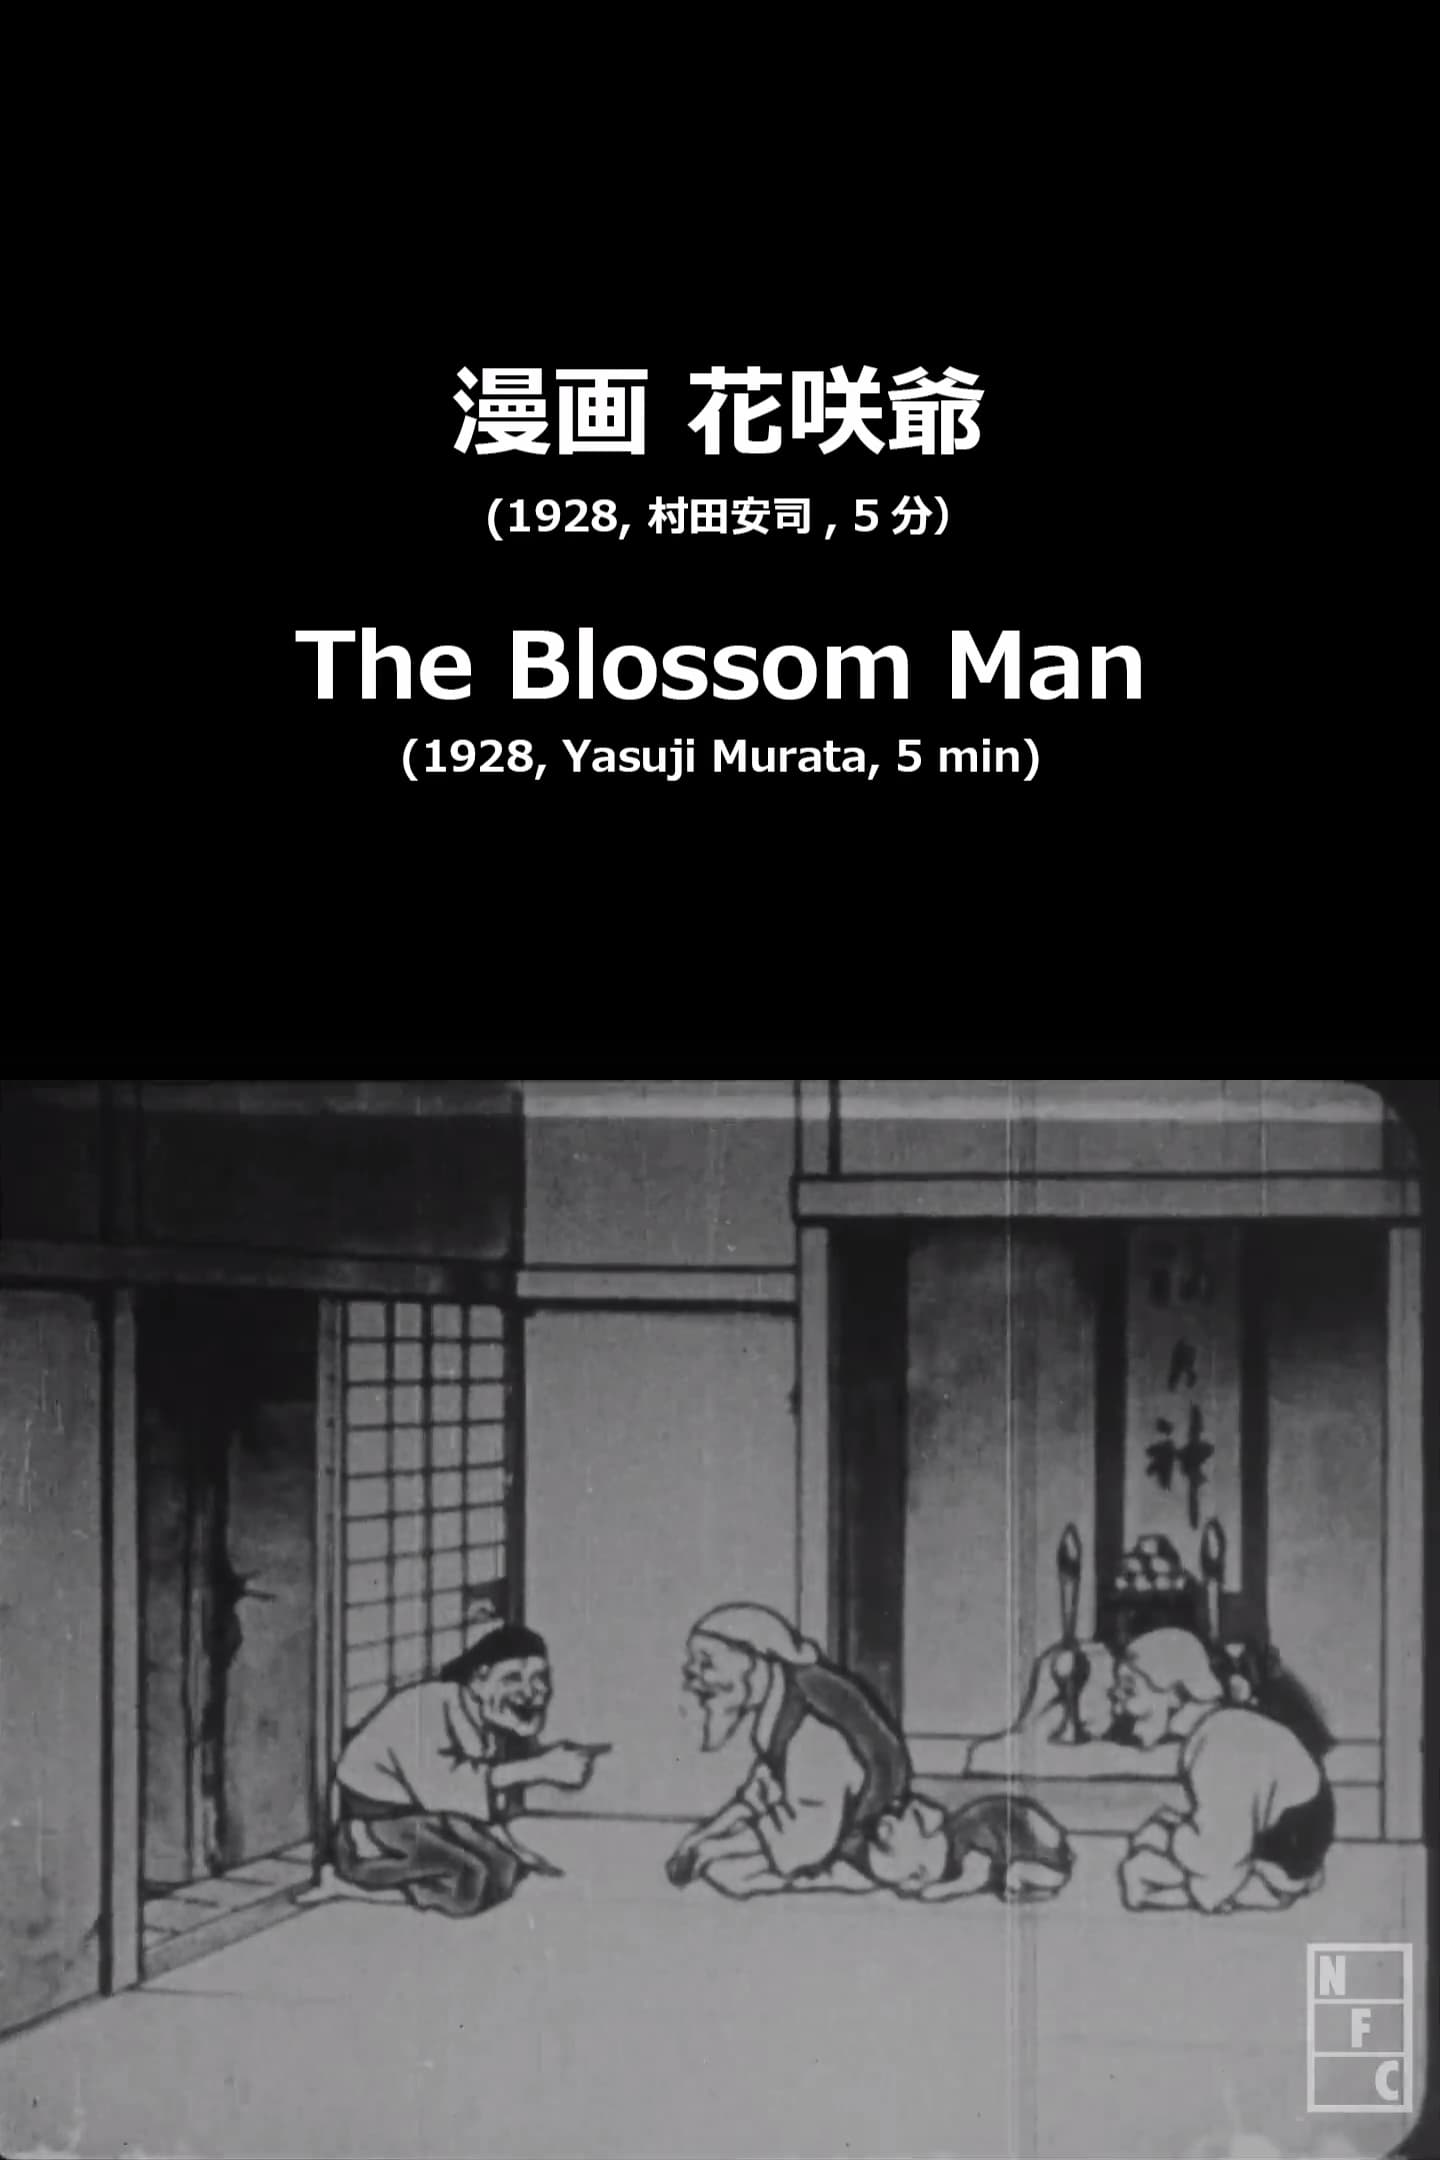 The Blossom Man